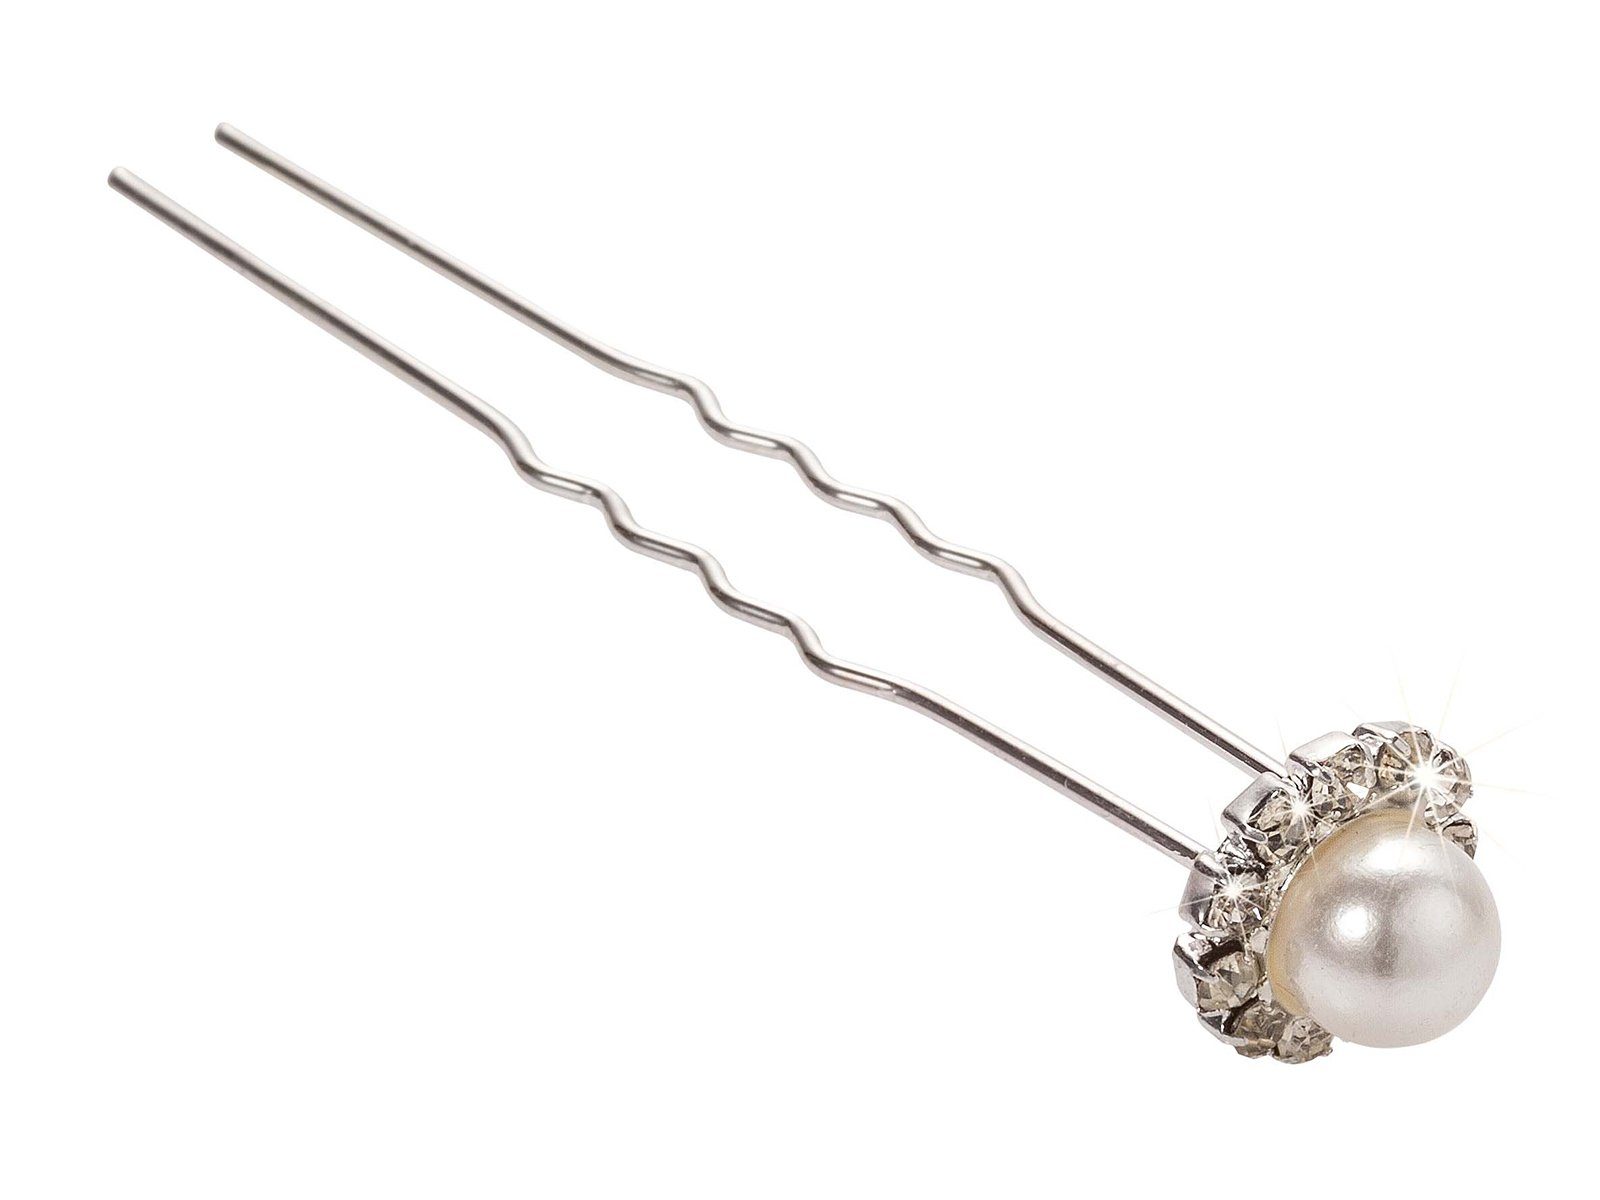 Haargummi Perle mit Kosmetex Kreis, Haar-Styling-Accessoires und im Haarnadel Strass